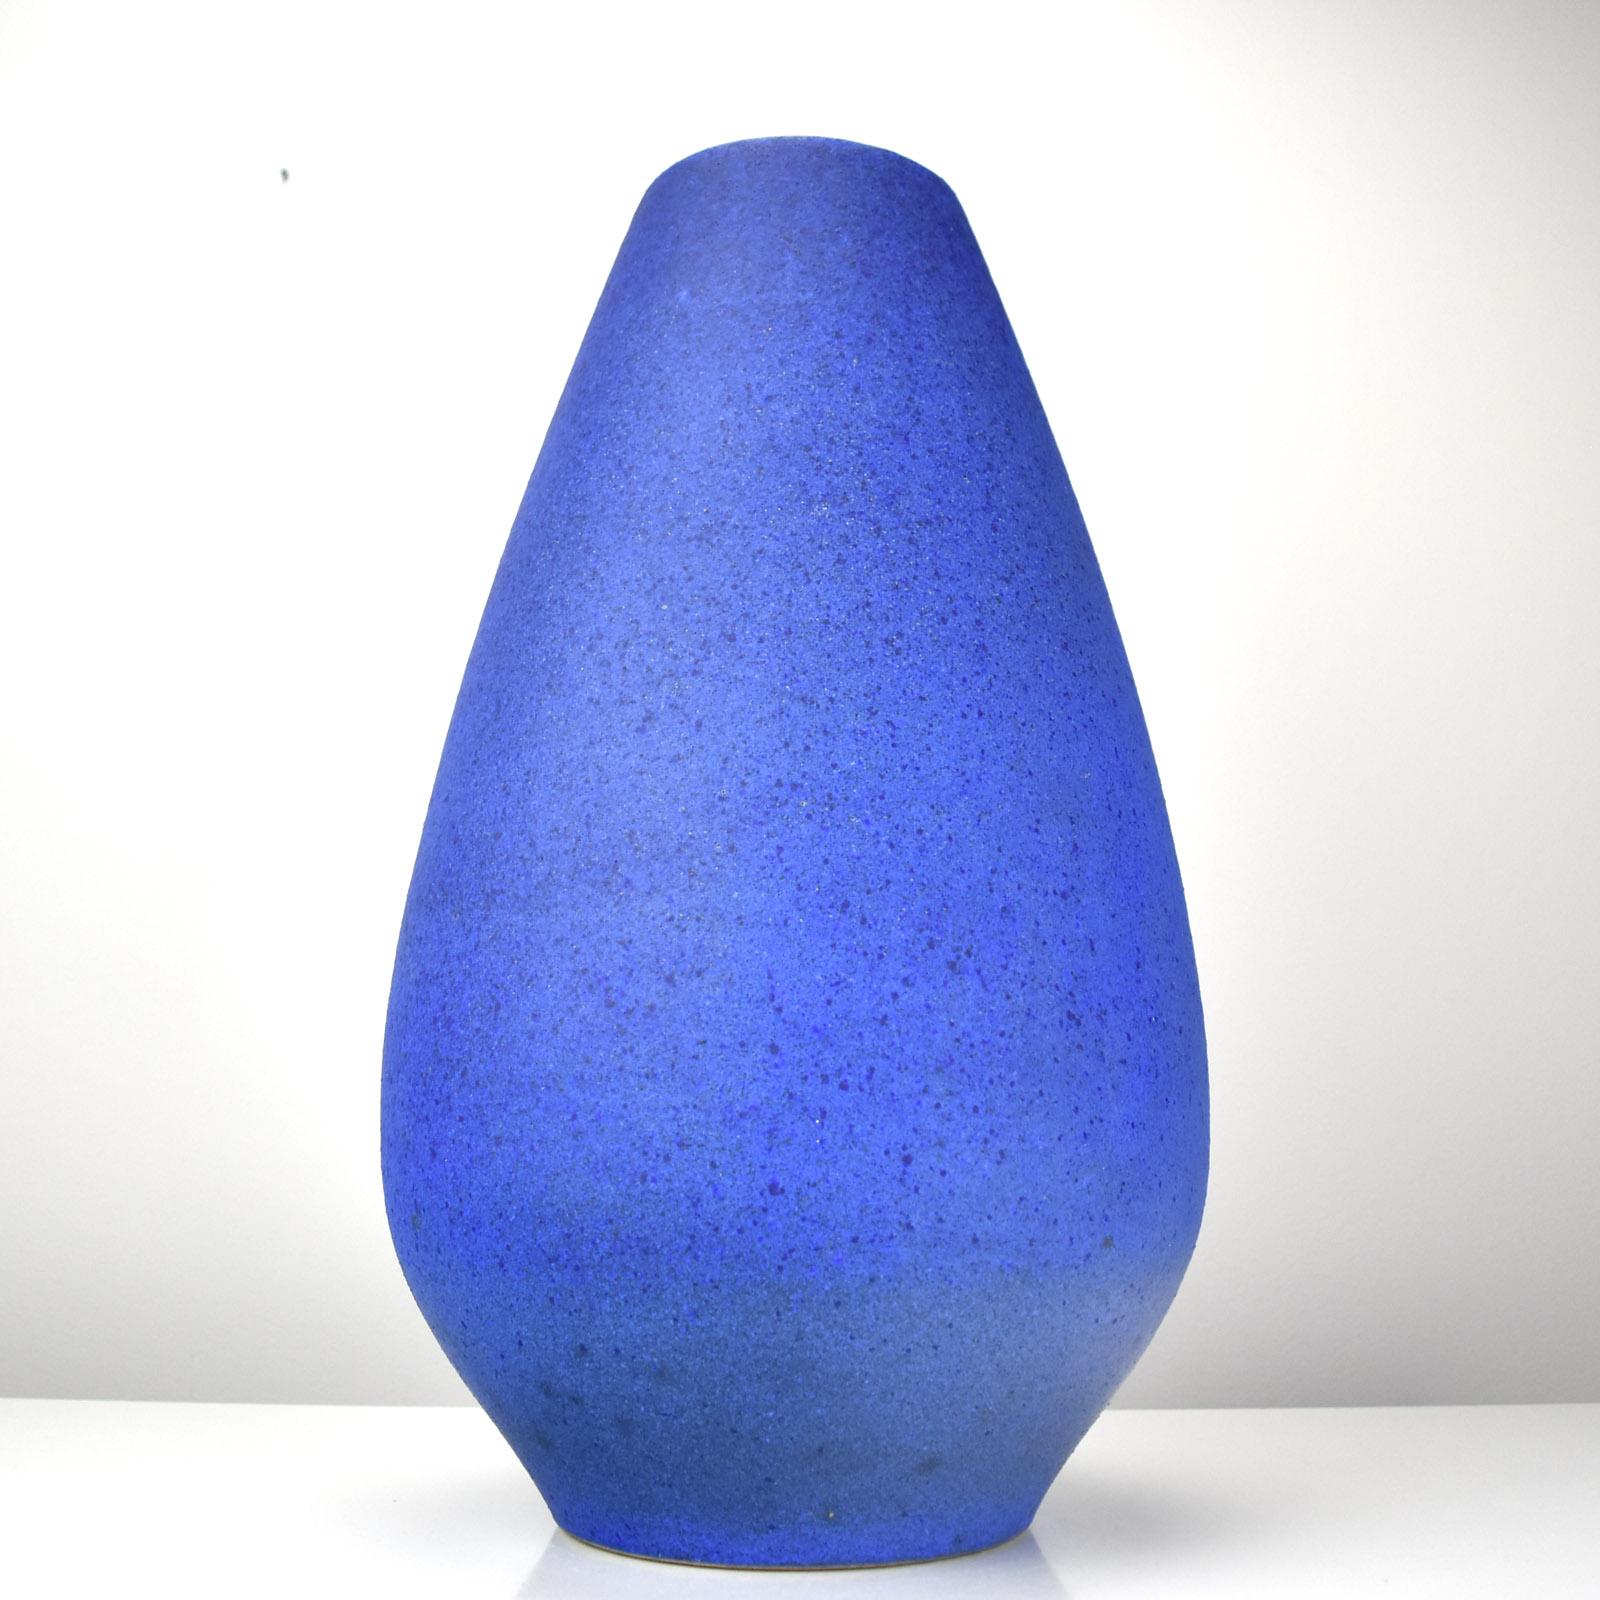 
Große blau glasierte Keramikvase oder Bodenvase oder Schirmständer von Yves Klein, wahrscheinlich in Deutschland von HOY oder Silberdistel in der  1950er/60er Jahre.

Ein großes dekoratives Stück in sehr gutem Zustand.